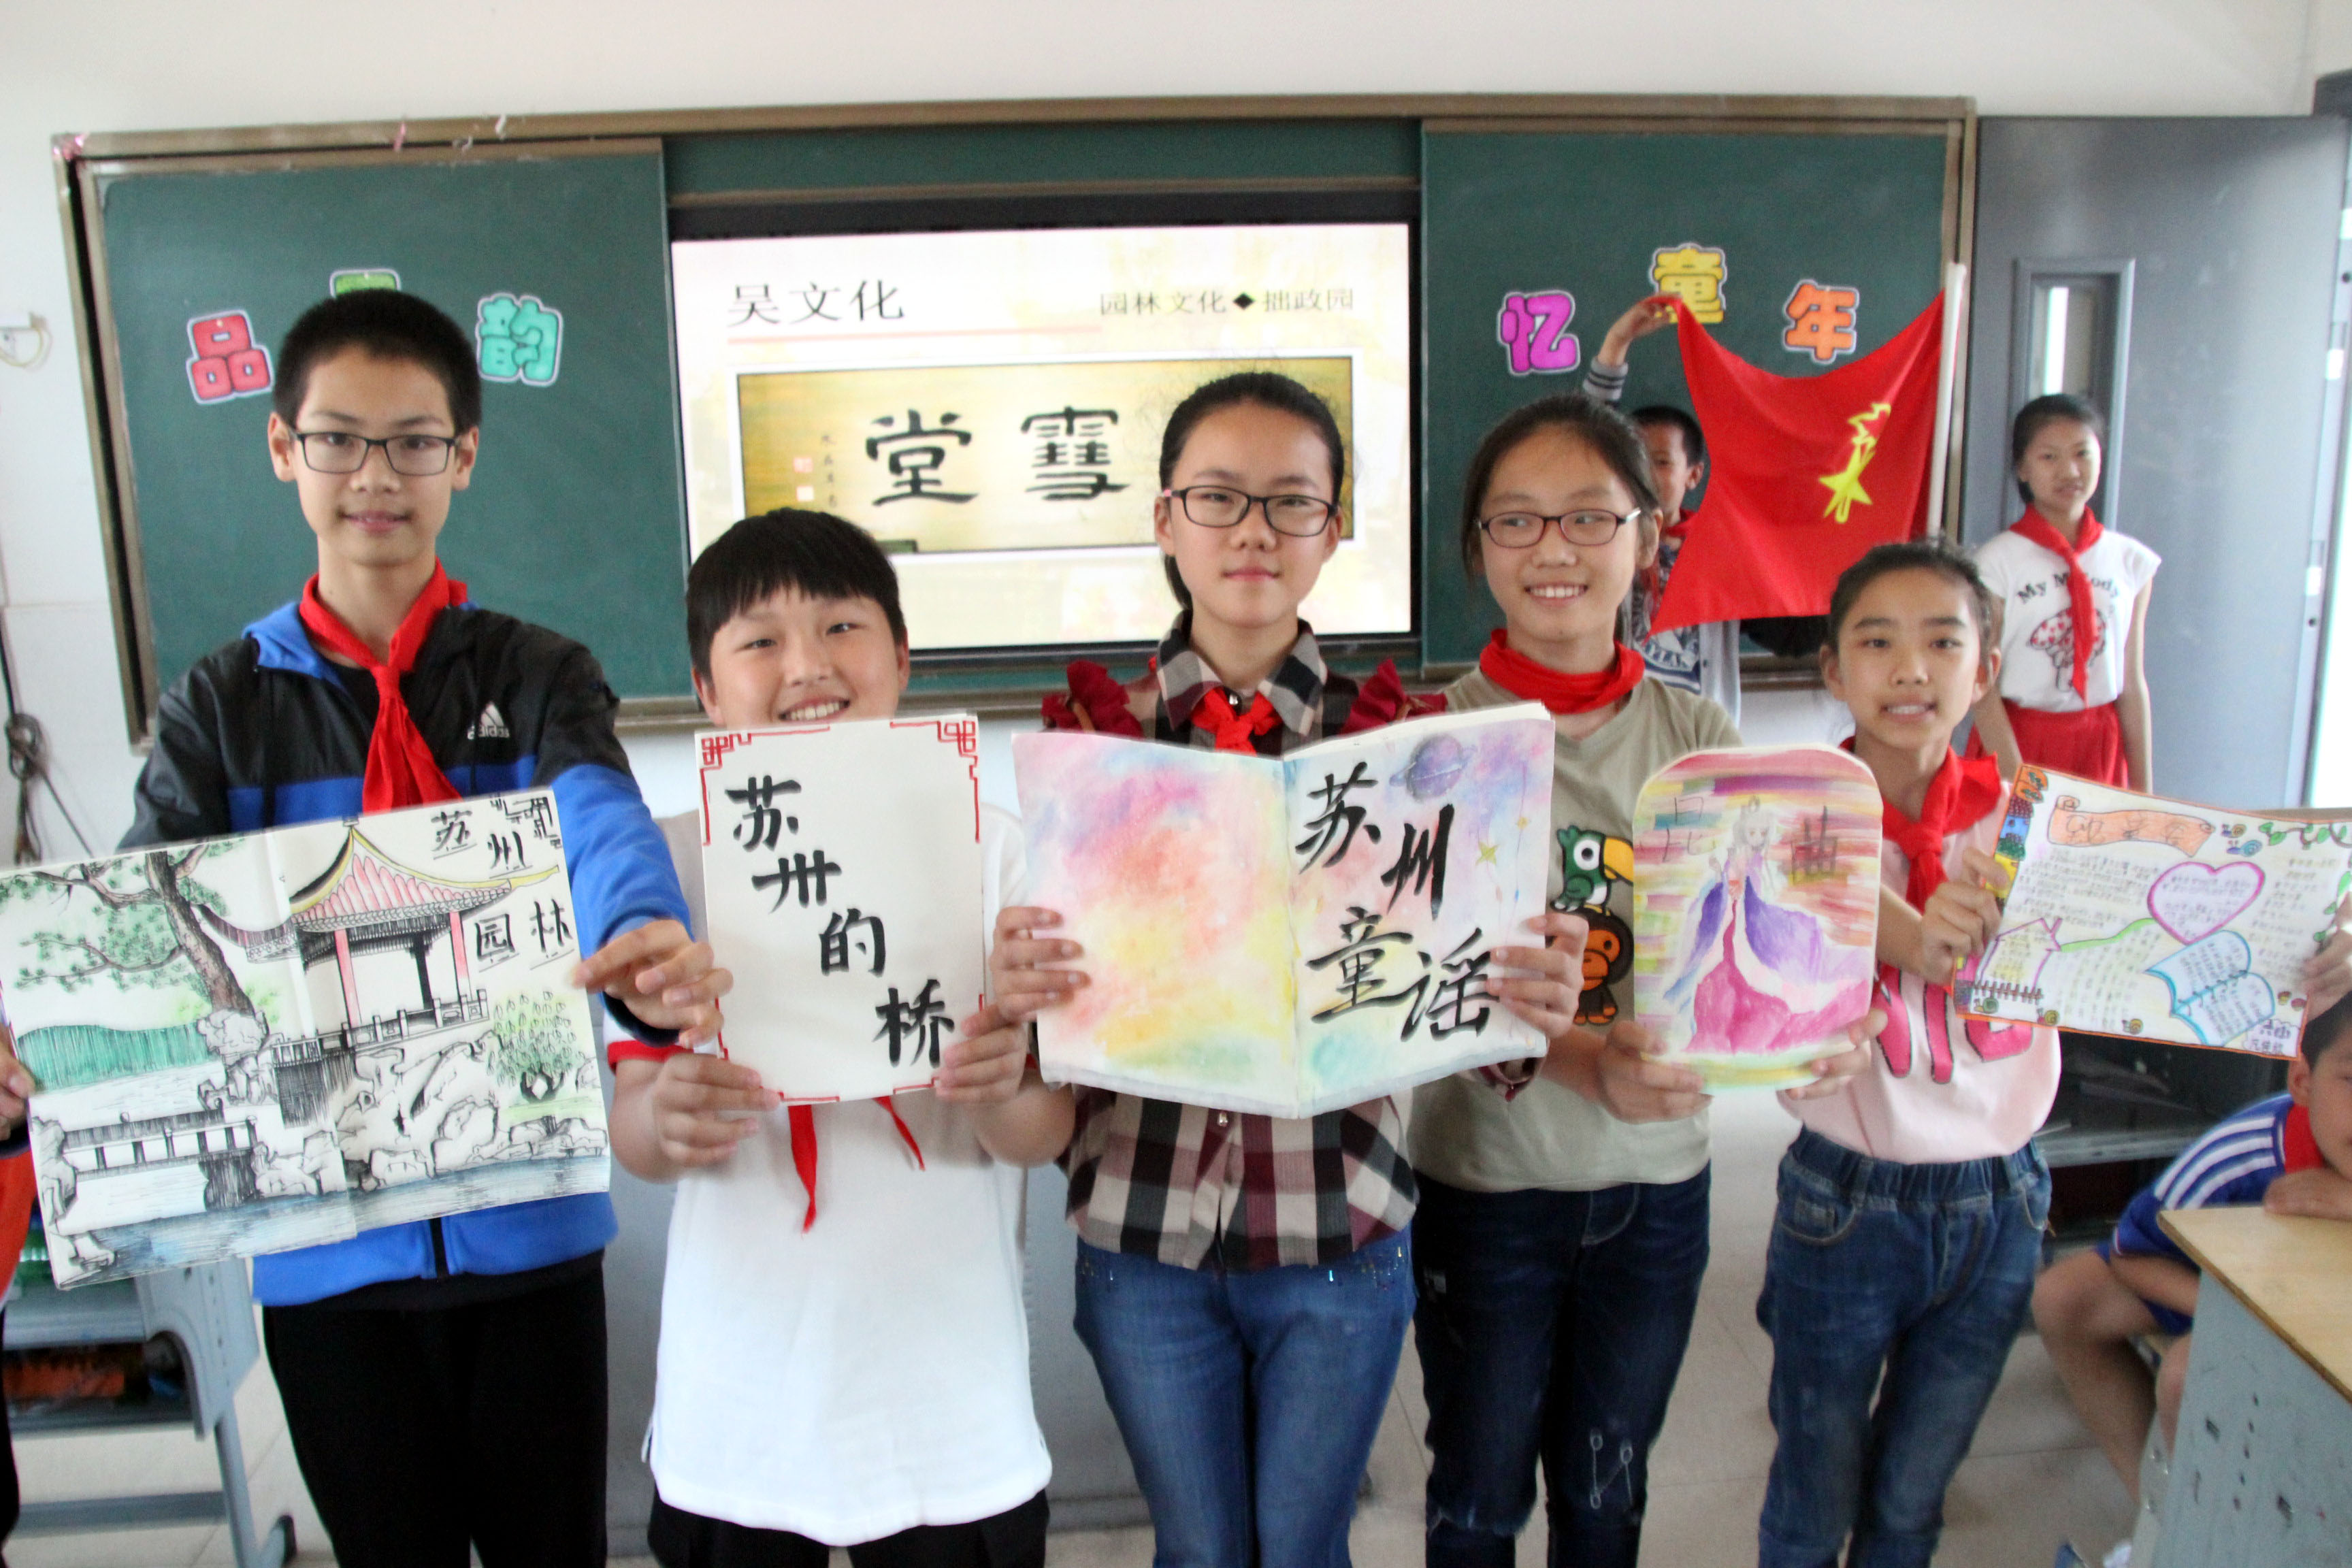 苏州市杨枝小学校学生体验吴文化 欢庆六一儿童节